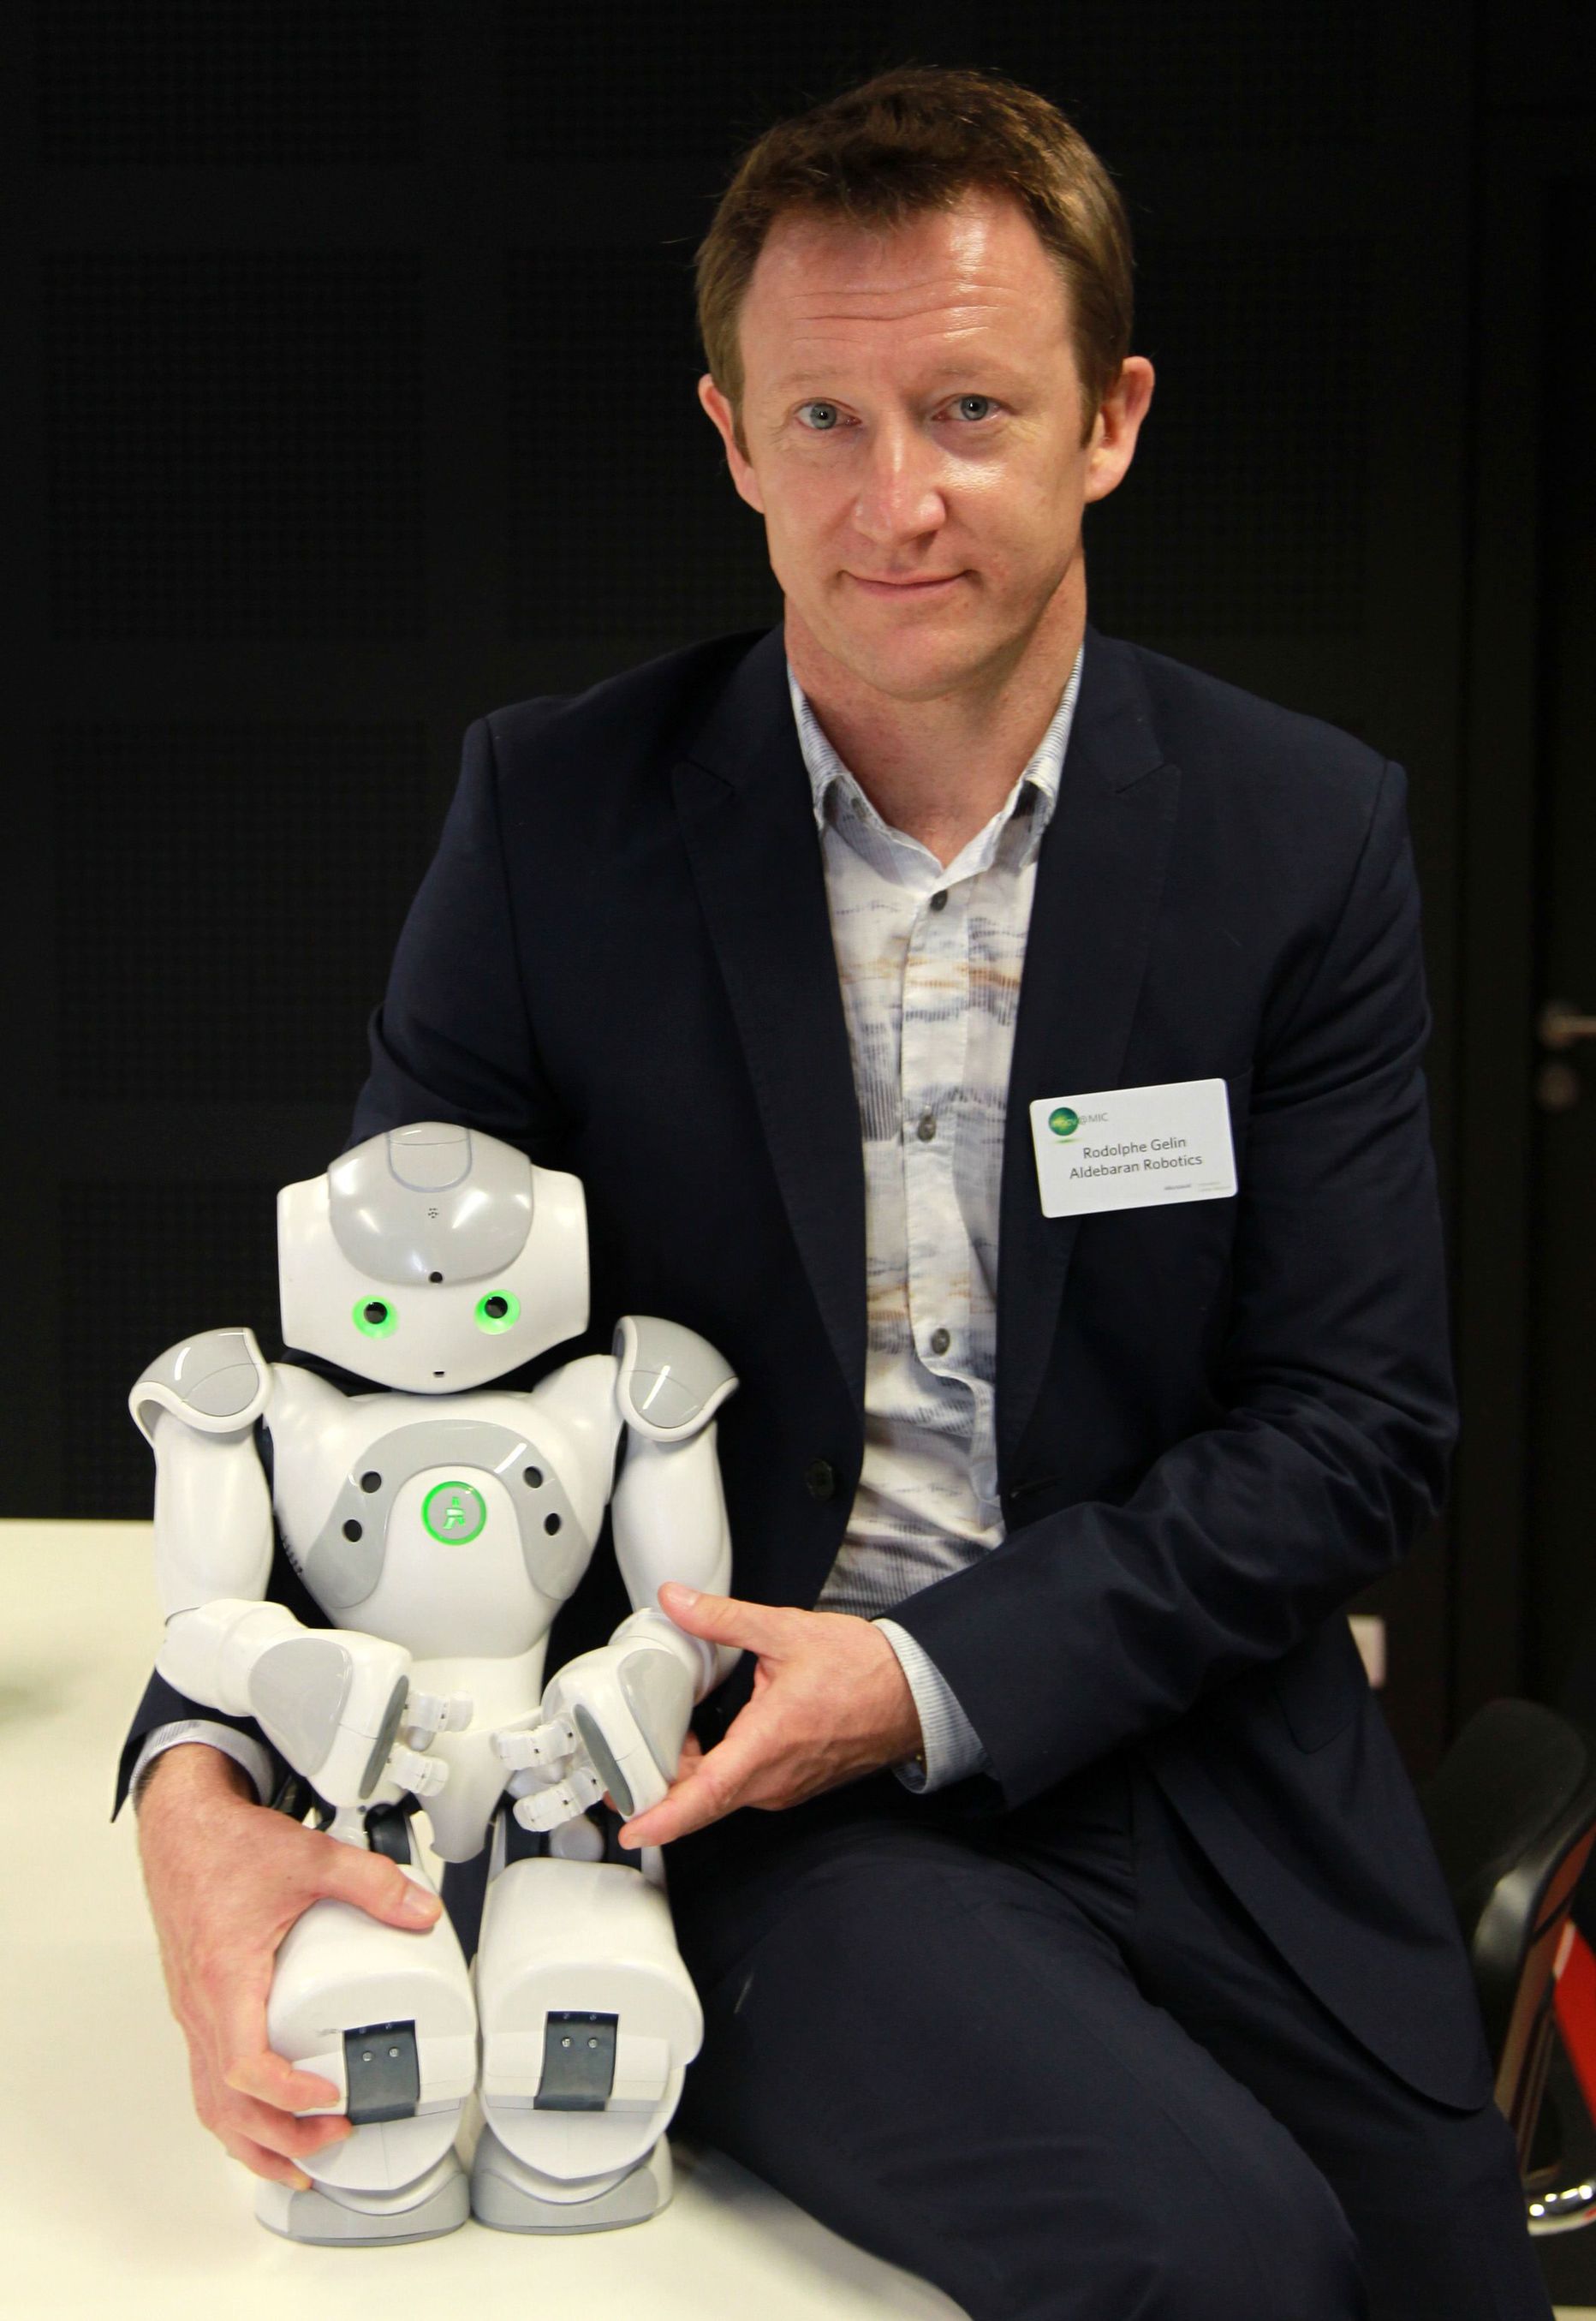 Nao roboti põhjal luuakse Eesti teadlaste osalusel hooldusrobot.